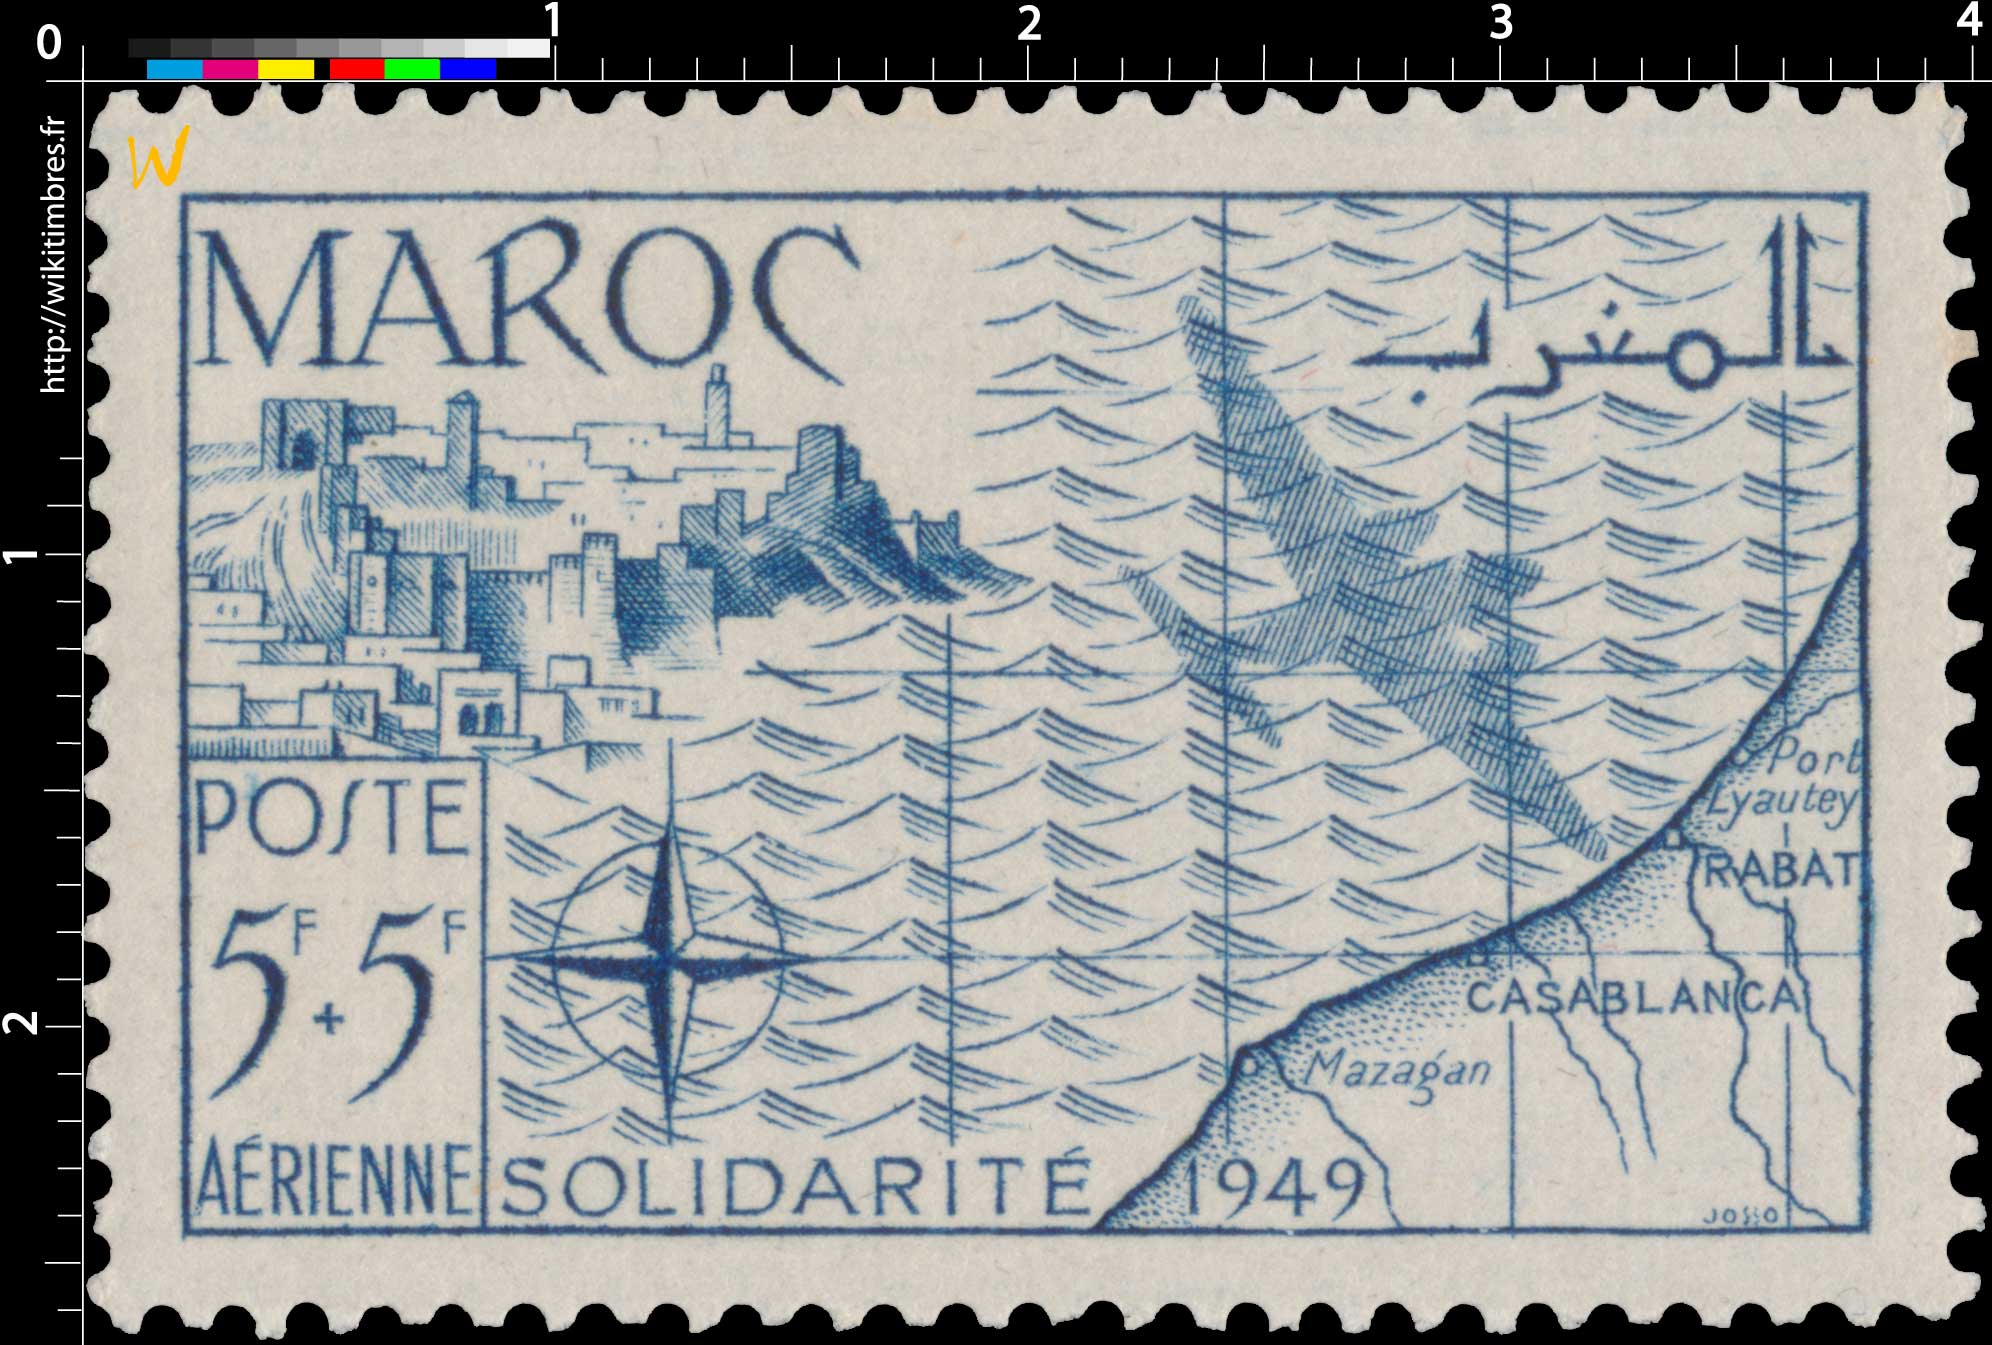 1950 Maroc - Au profit des Oeuvres de solidarité